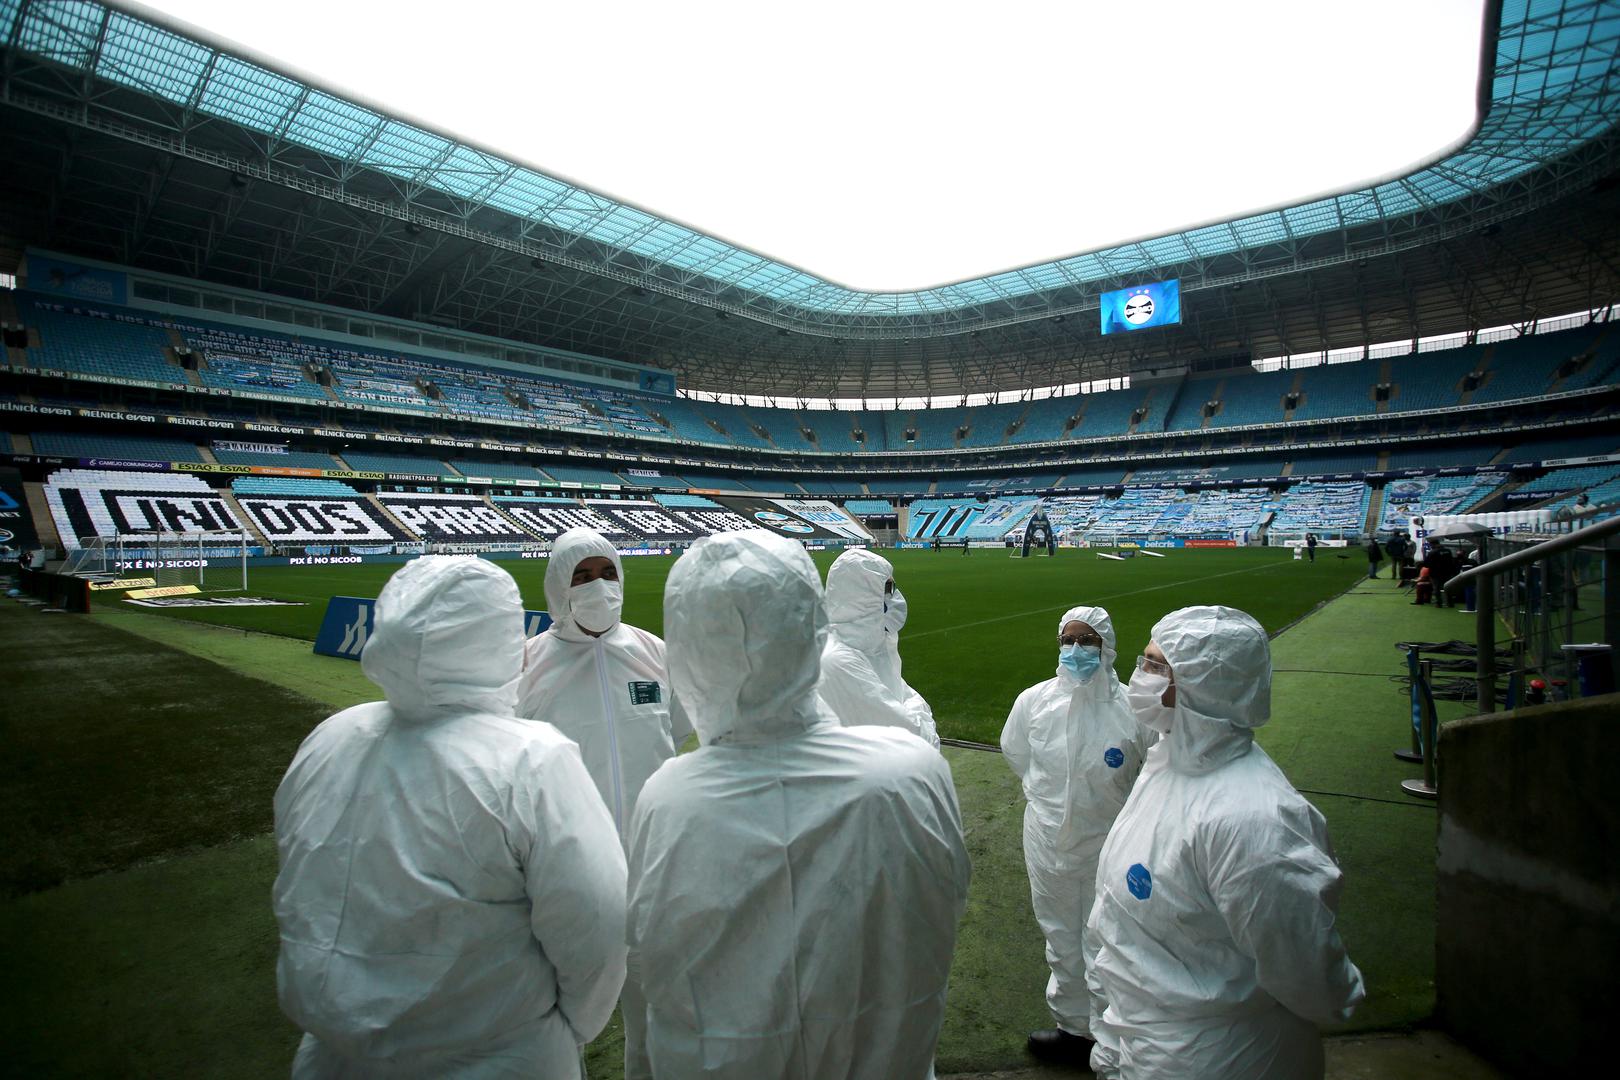 
Organizatori utakmice u Brazilu u zaštitnoj opremi zbog pandemije koronavirusa i prazne tribine.
